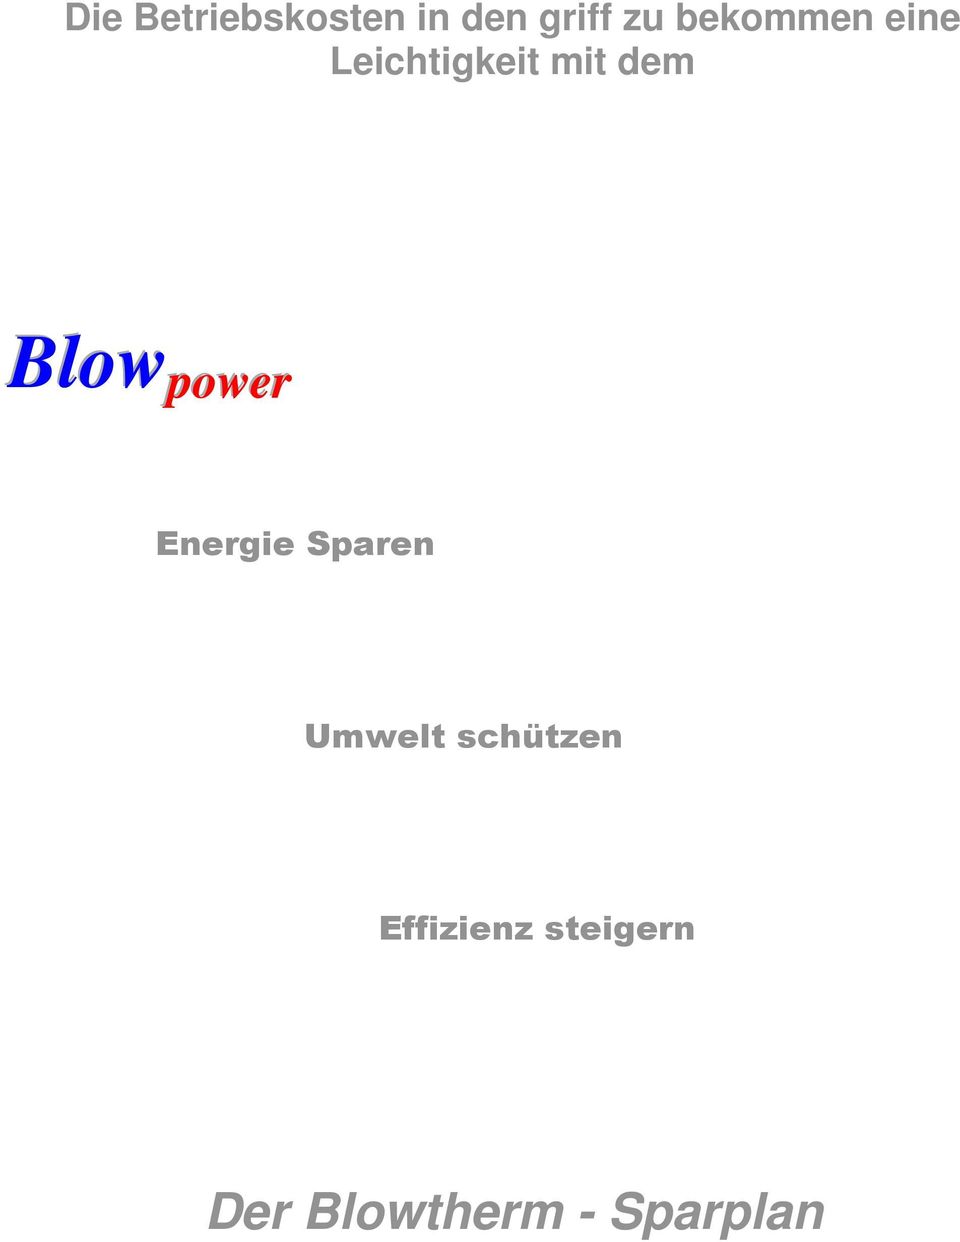 Blow power Energie Sparen Umwelt